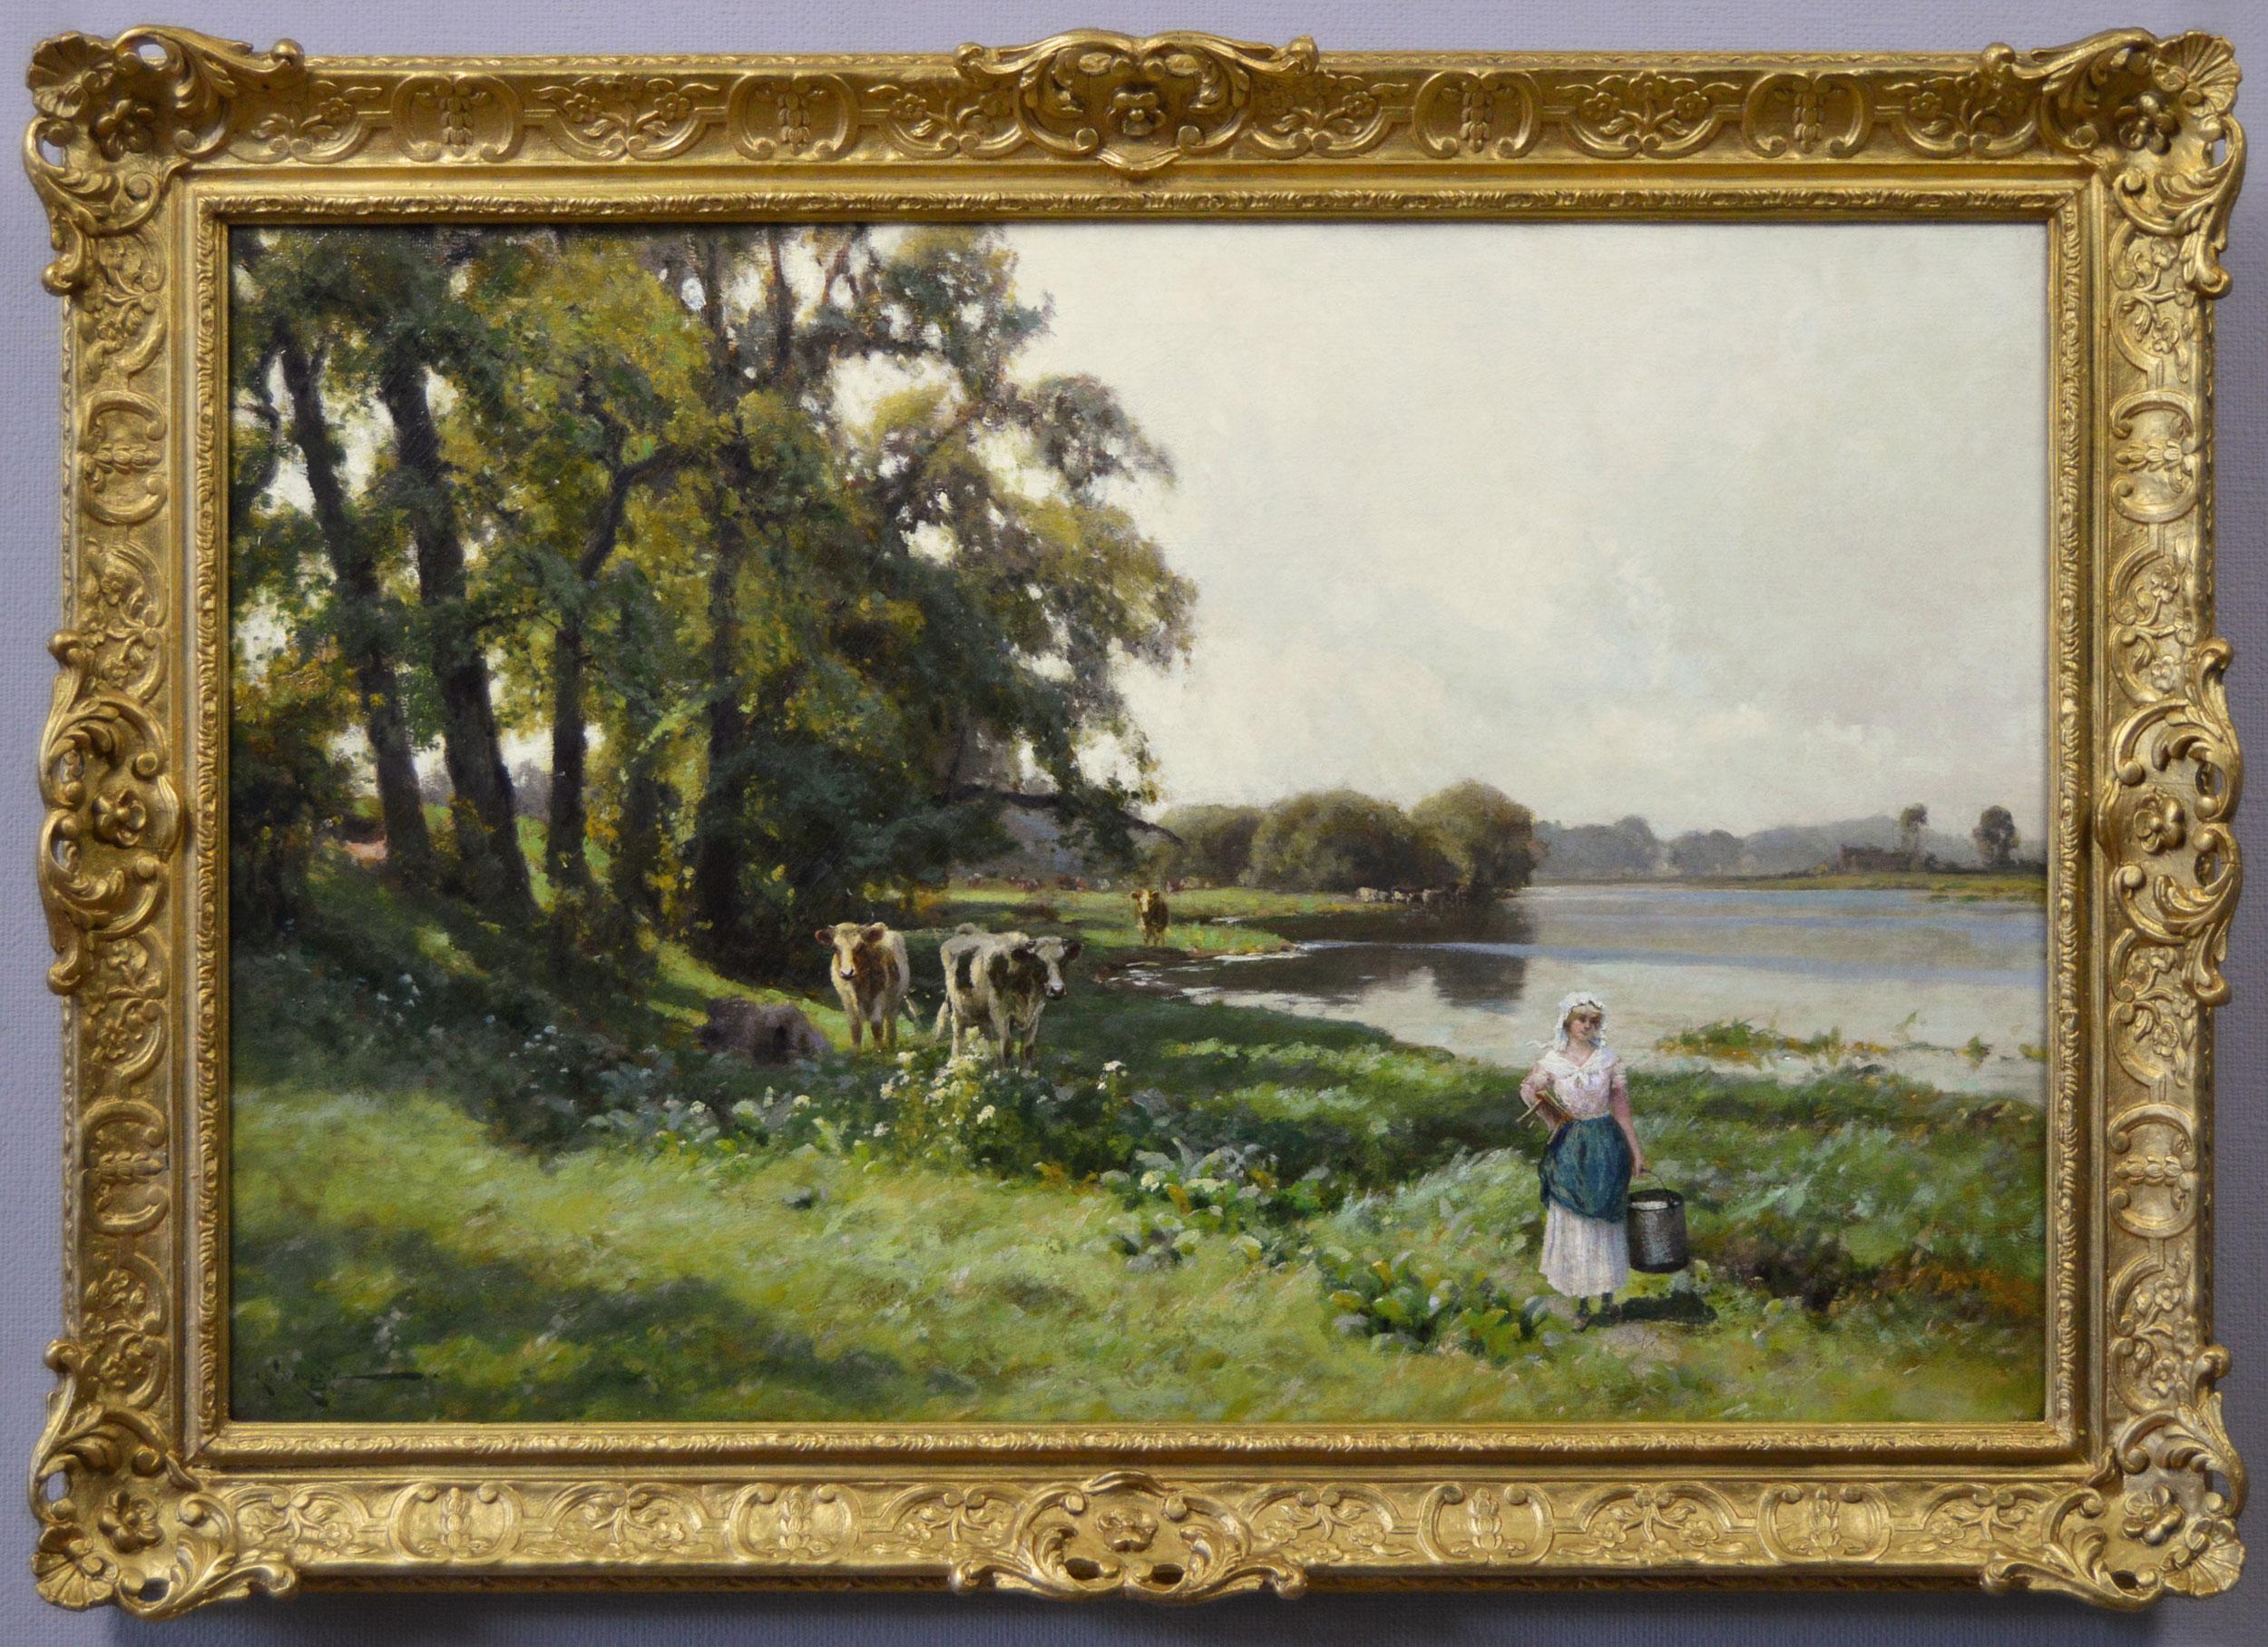 Landscape Painting Arthur Walker Redgate - Peinture à l'huile de paysage du 19e siècle représentant une femme avec du bétail près d'une rivière